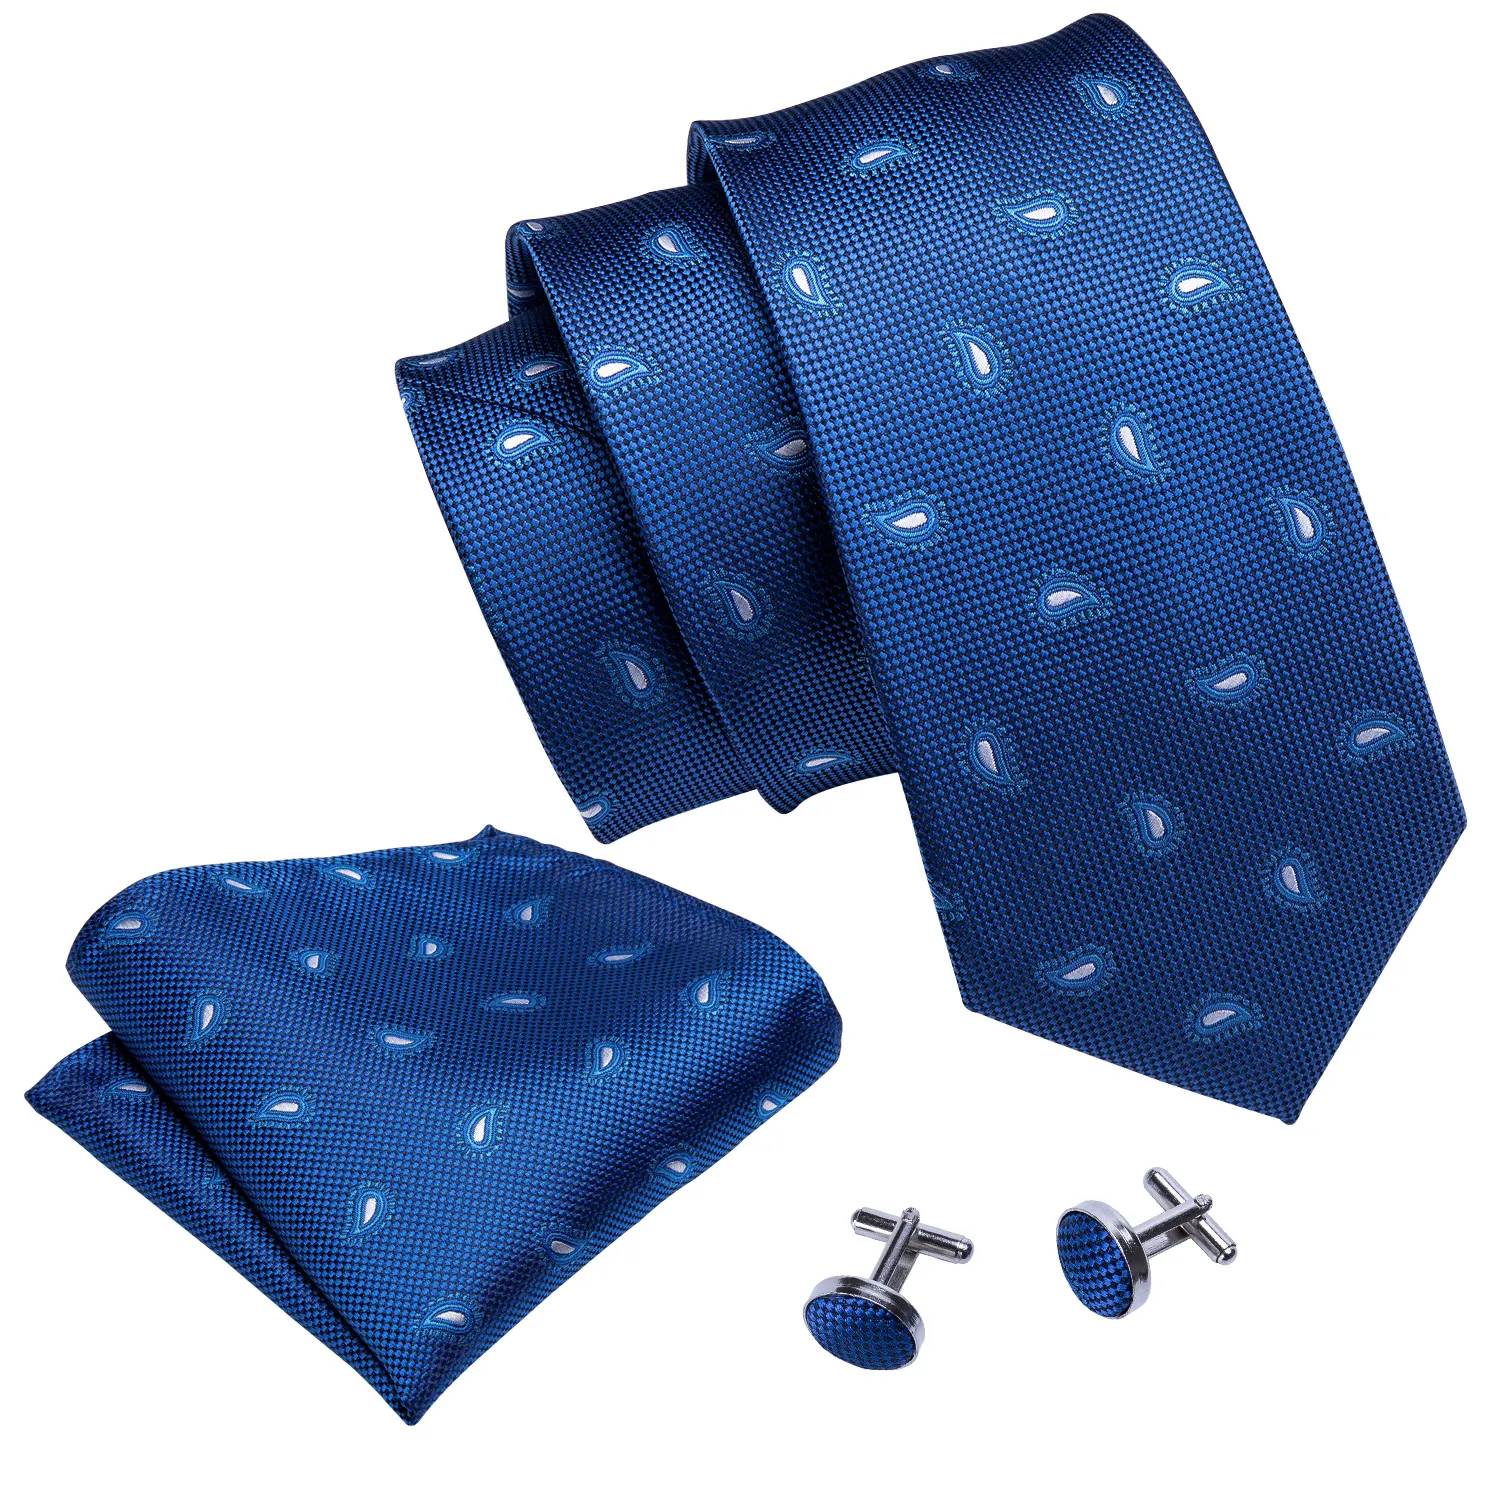 Яркий блюз Пейсли галстук британский стиль деловые связи Оптовая мода освобождая доставка Н-5042